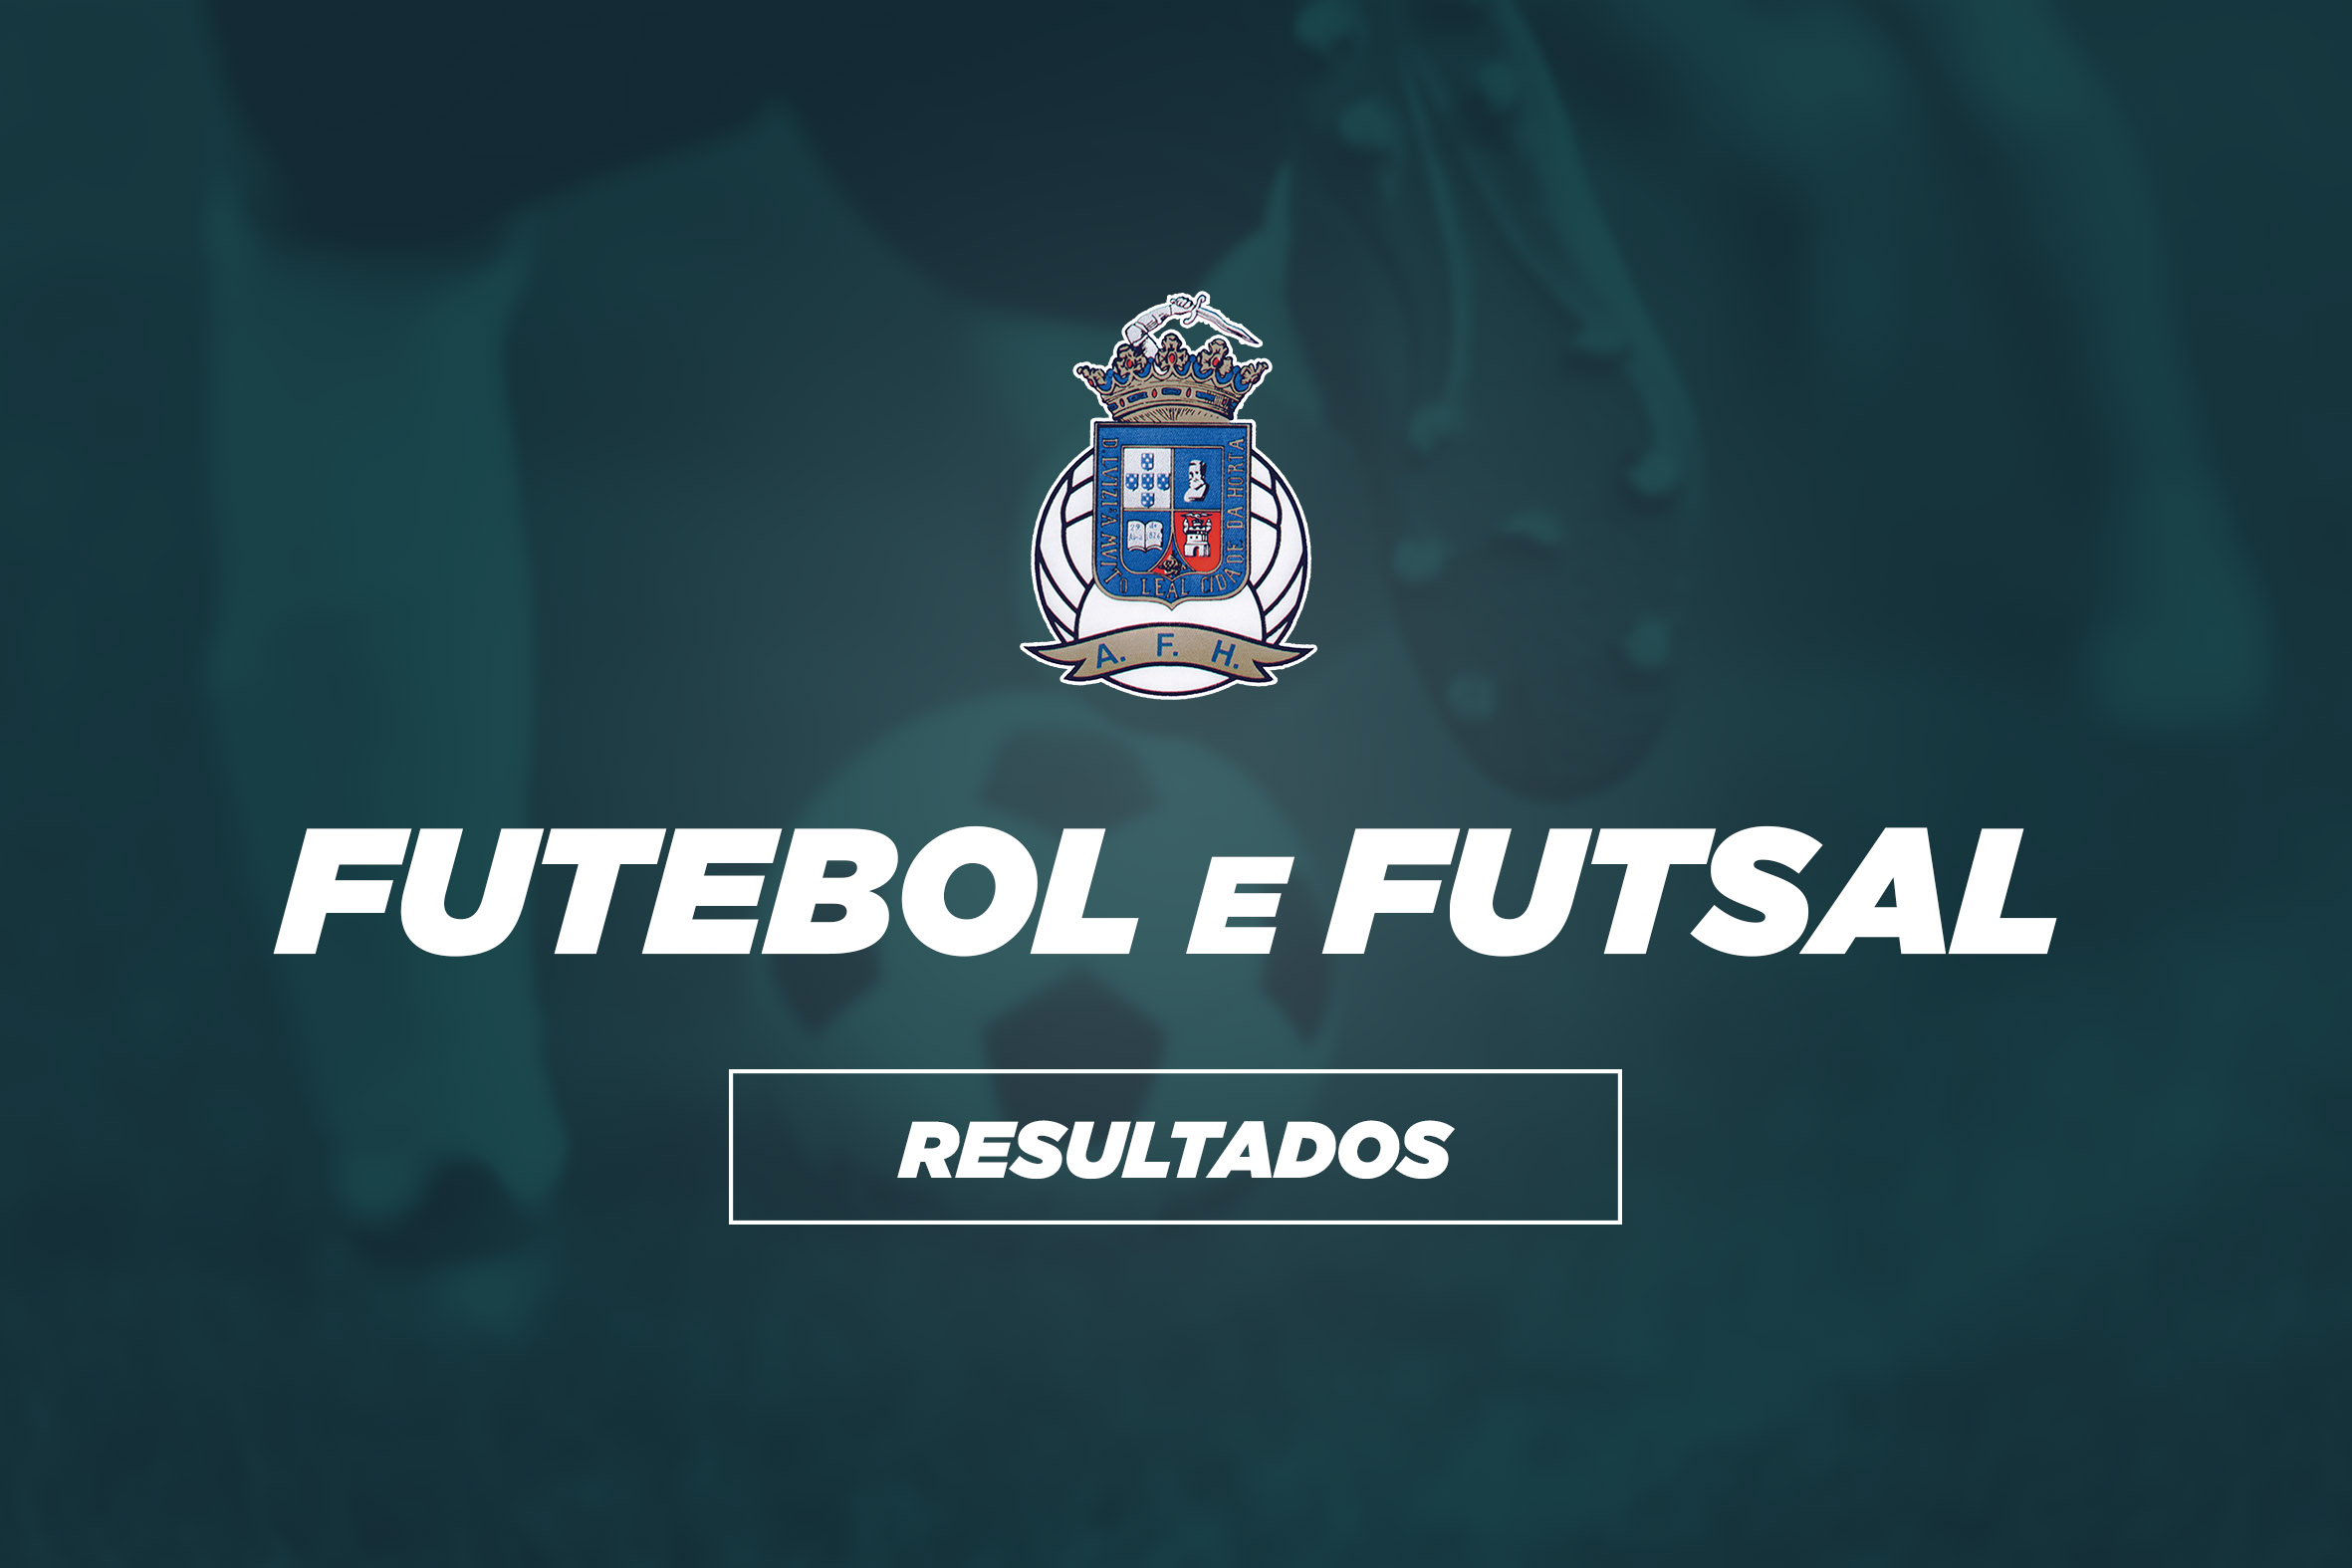 Resultados fim de semana | Futebol e Futsal